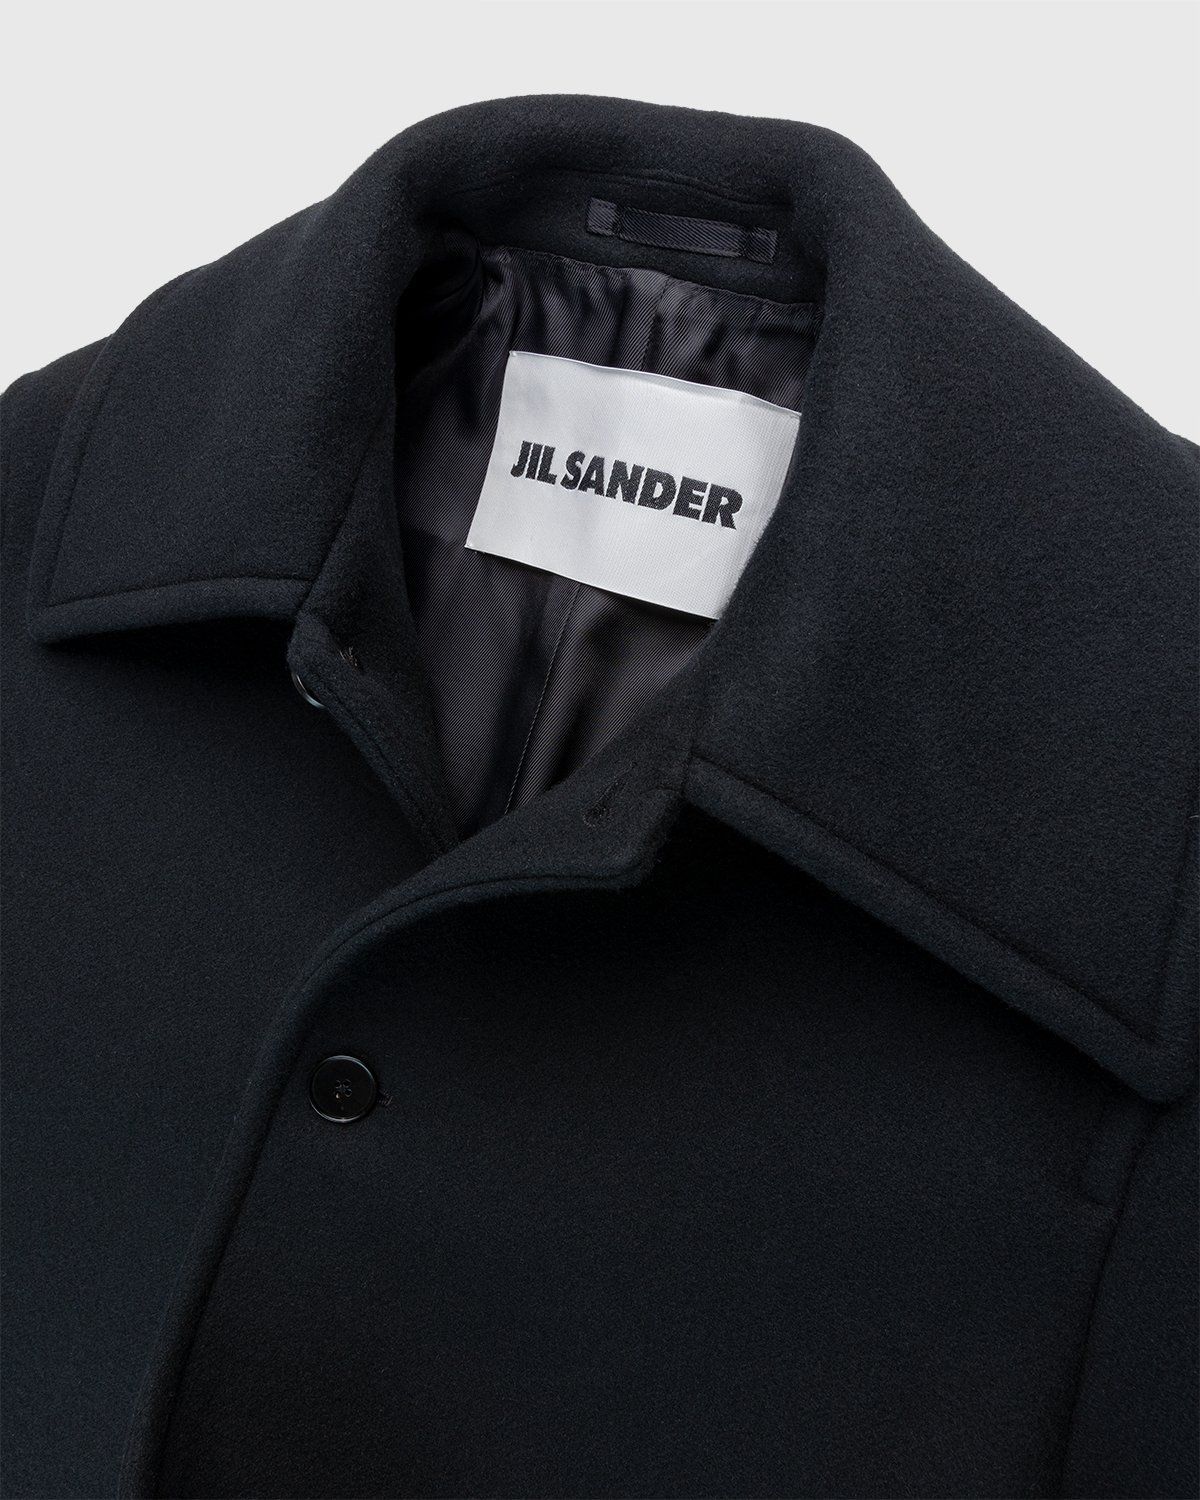 Jil Sander – Coat Black - Outerwear - Black - Image 3